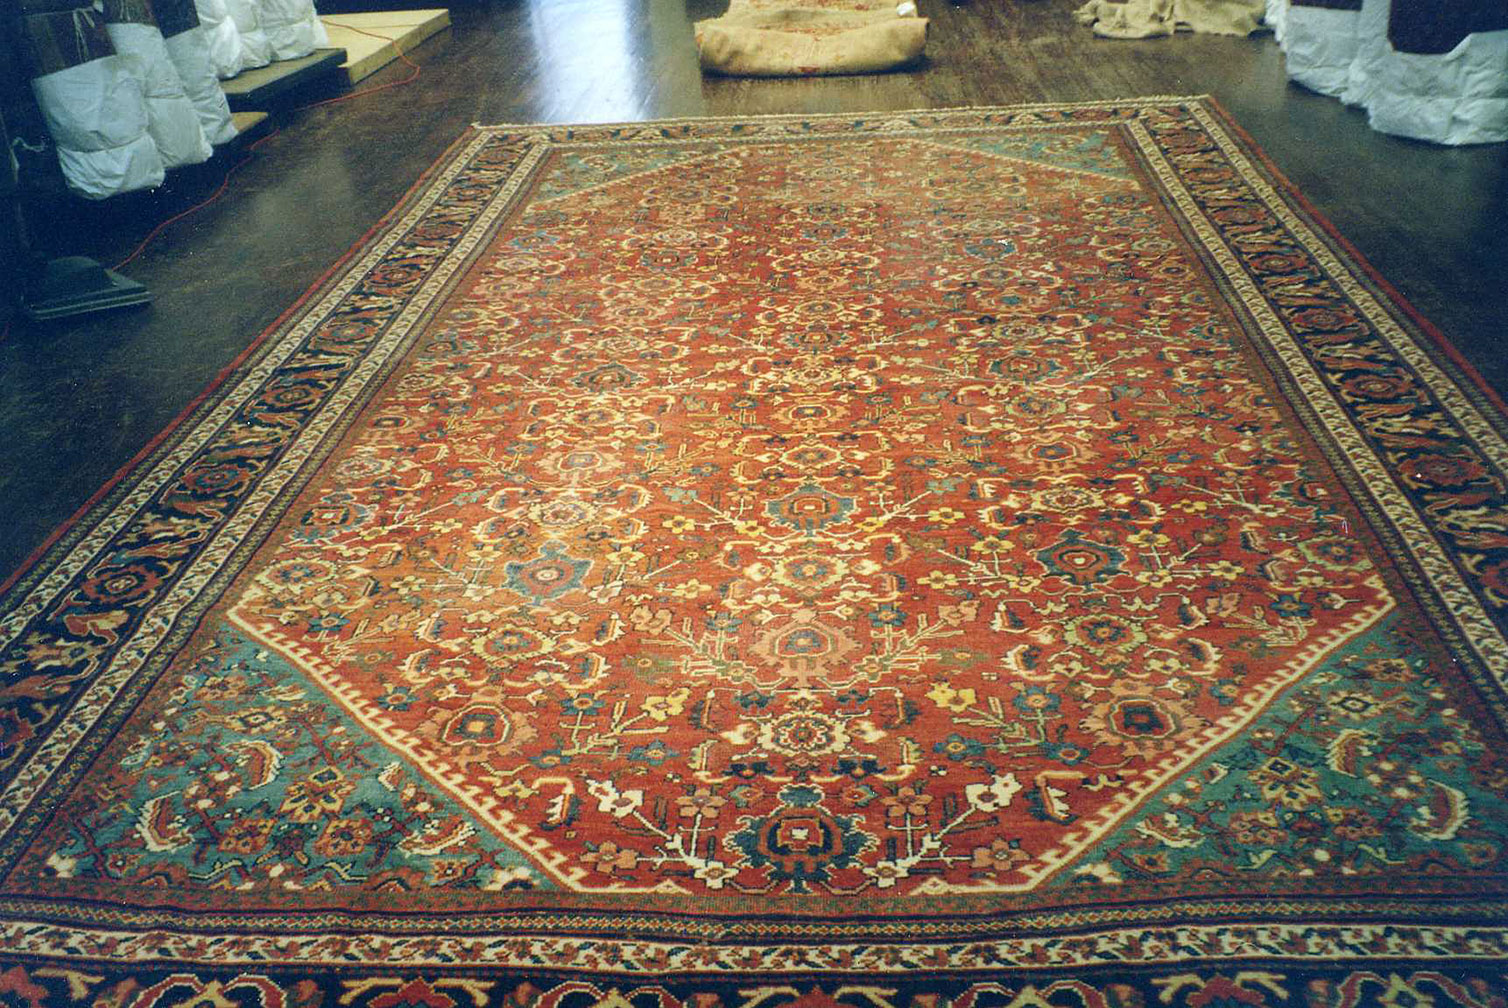 Antique mahal Carpet - # 52479